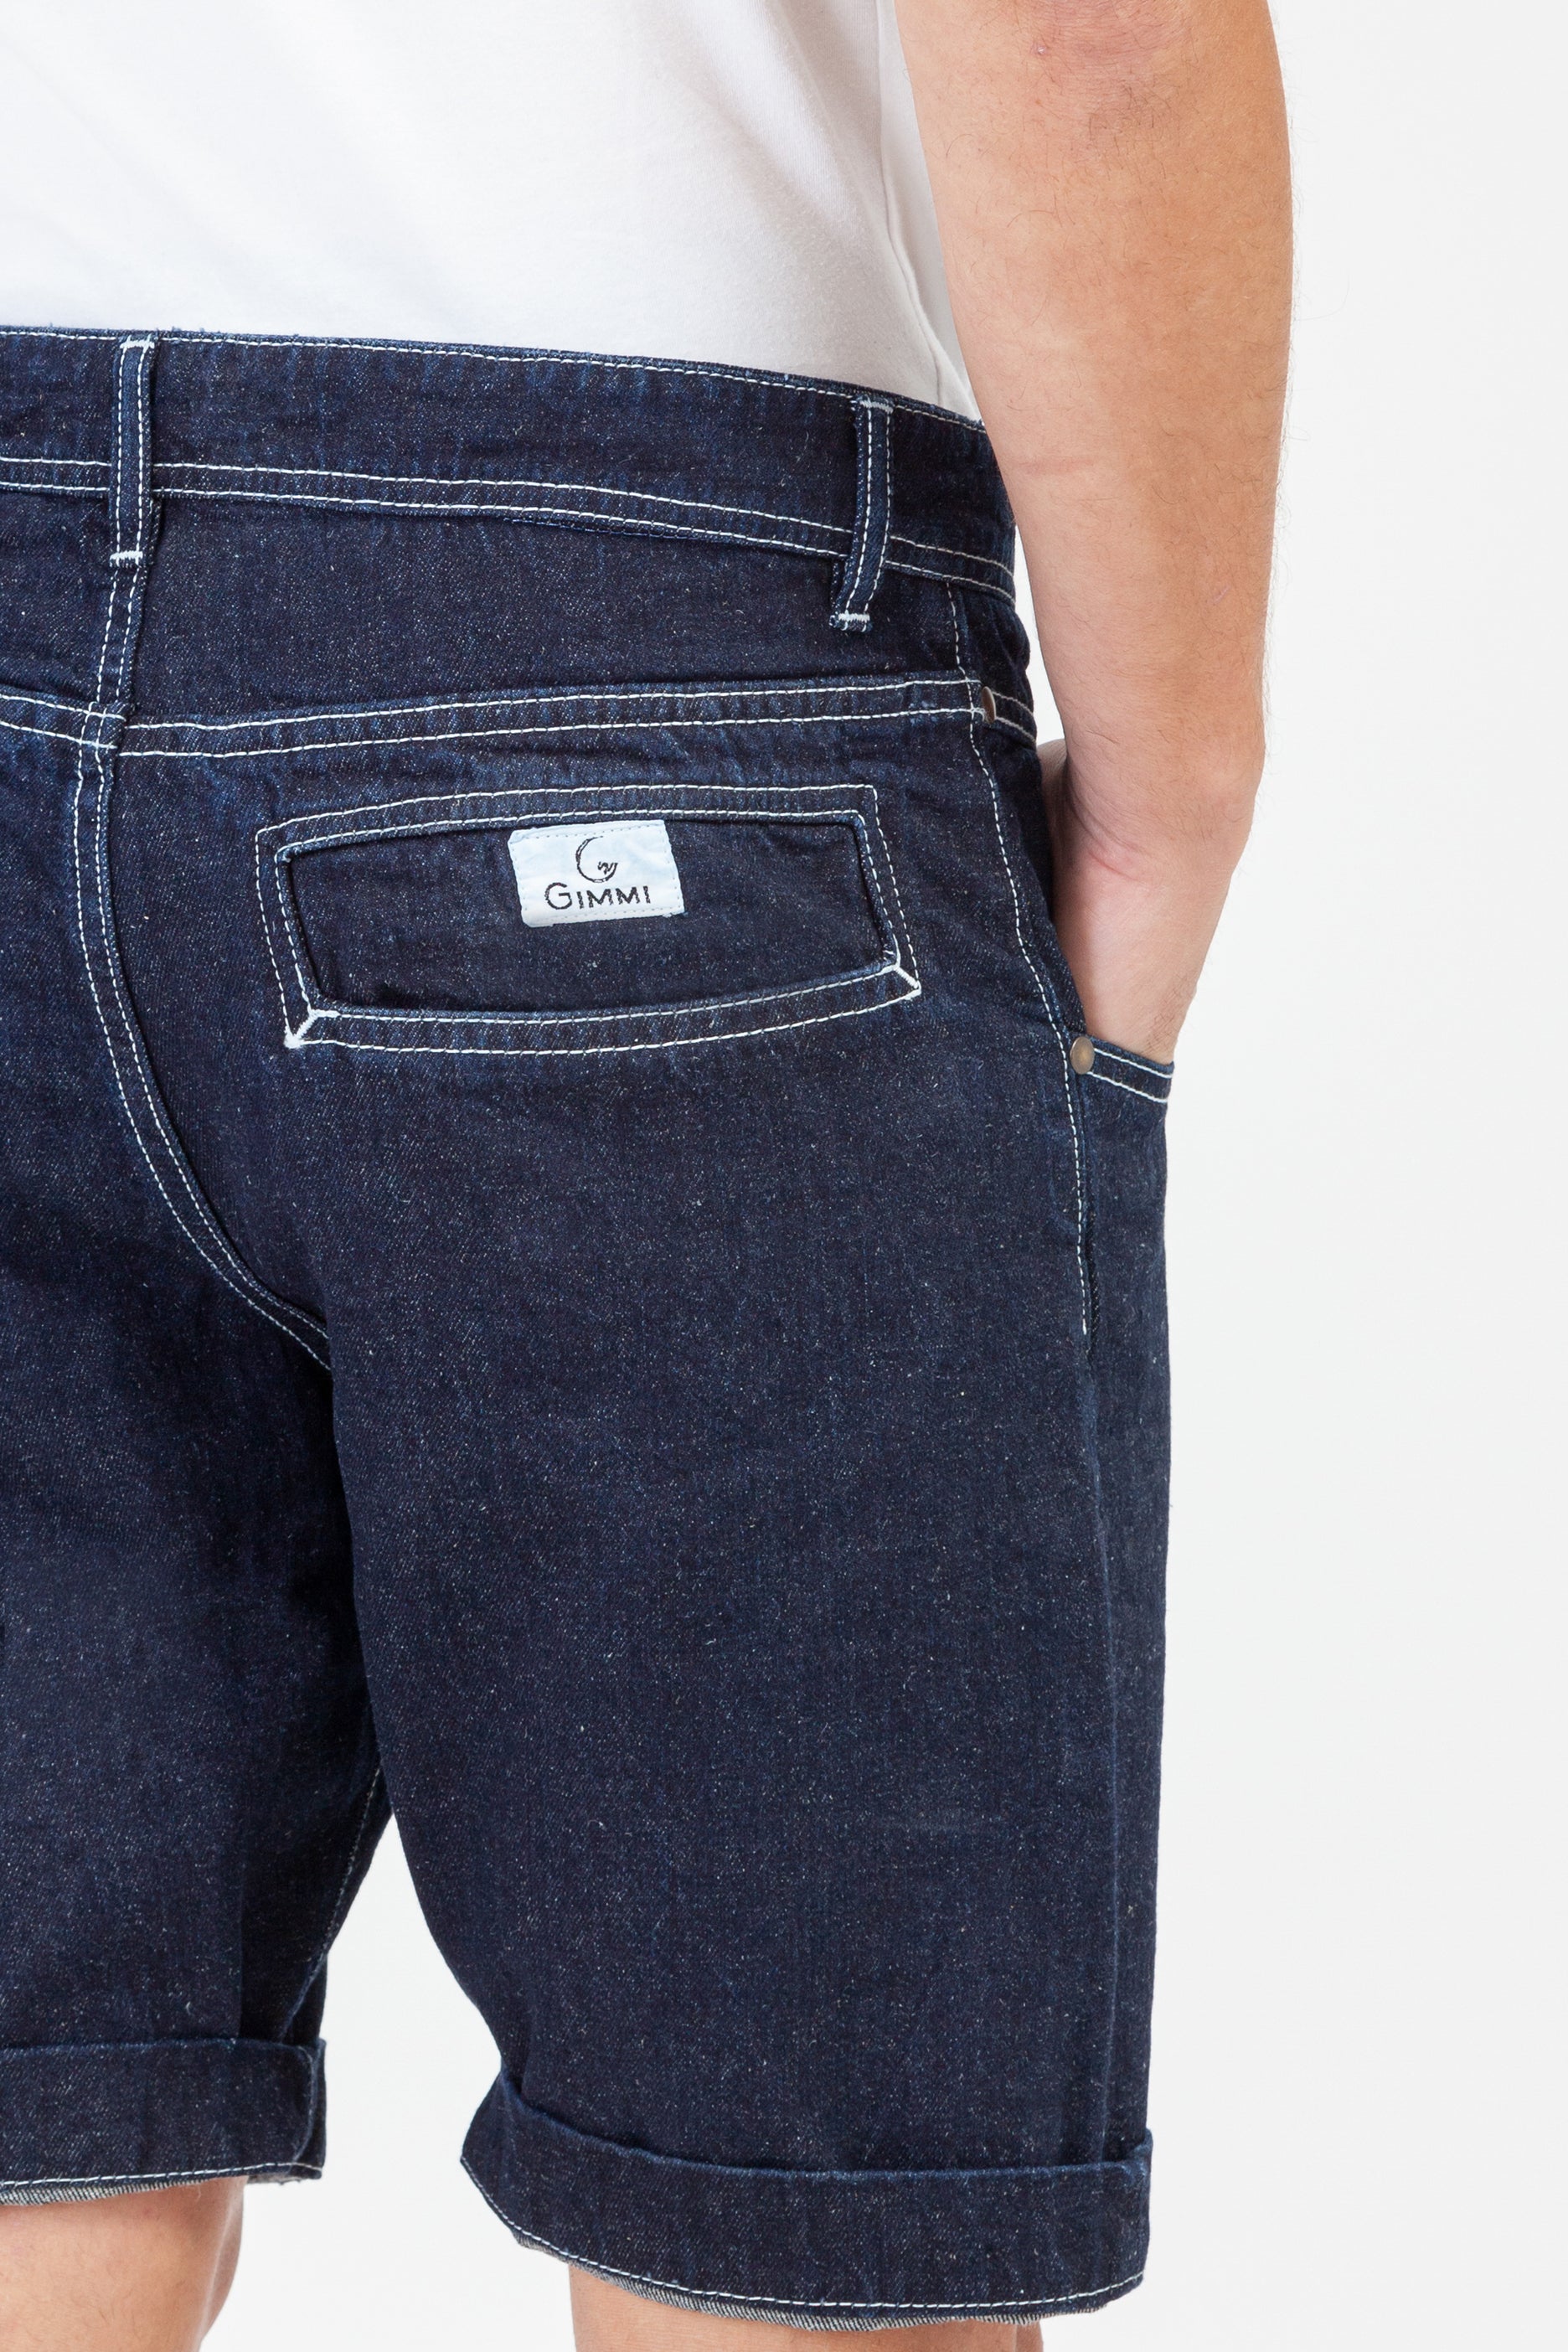 Jeans-short-Amerigo-denim-canapa-dettaglio